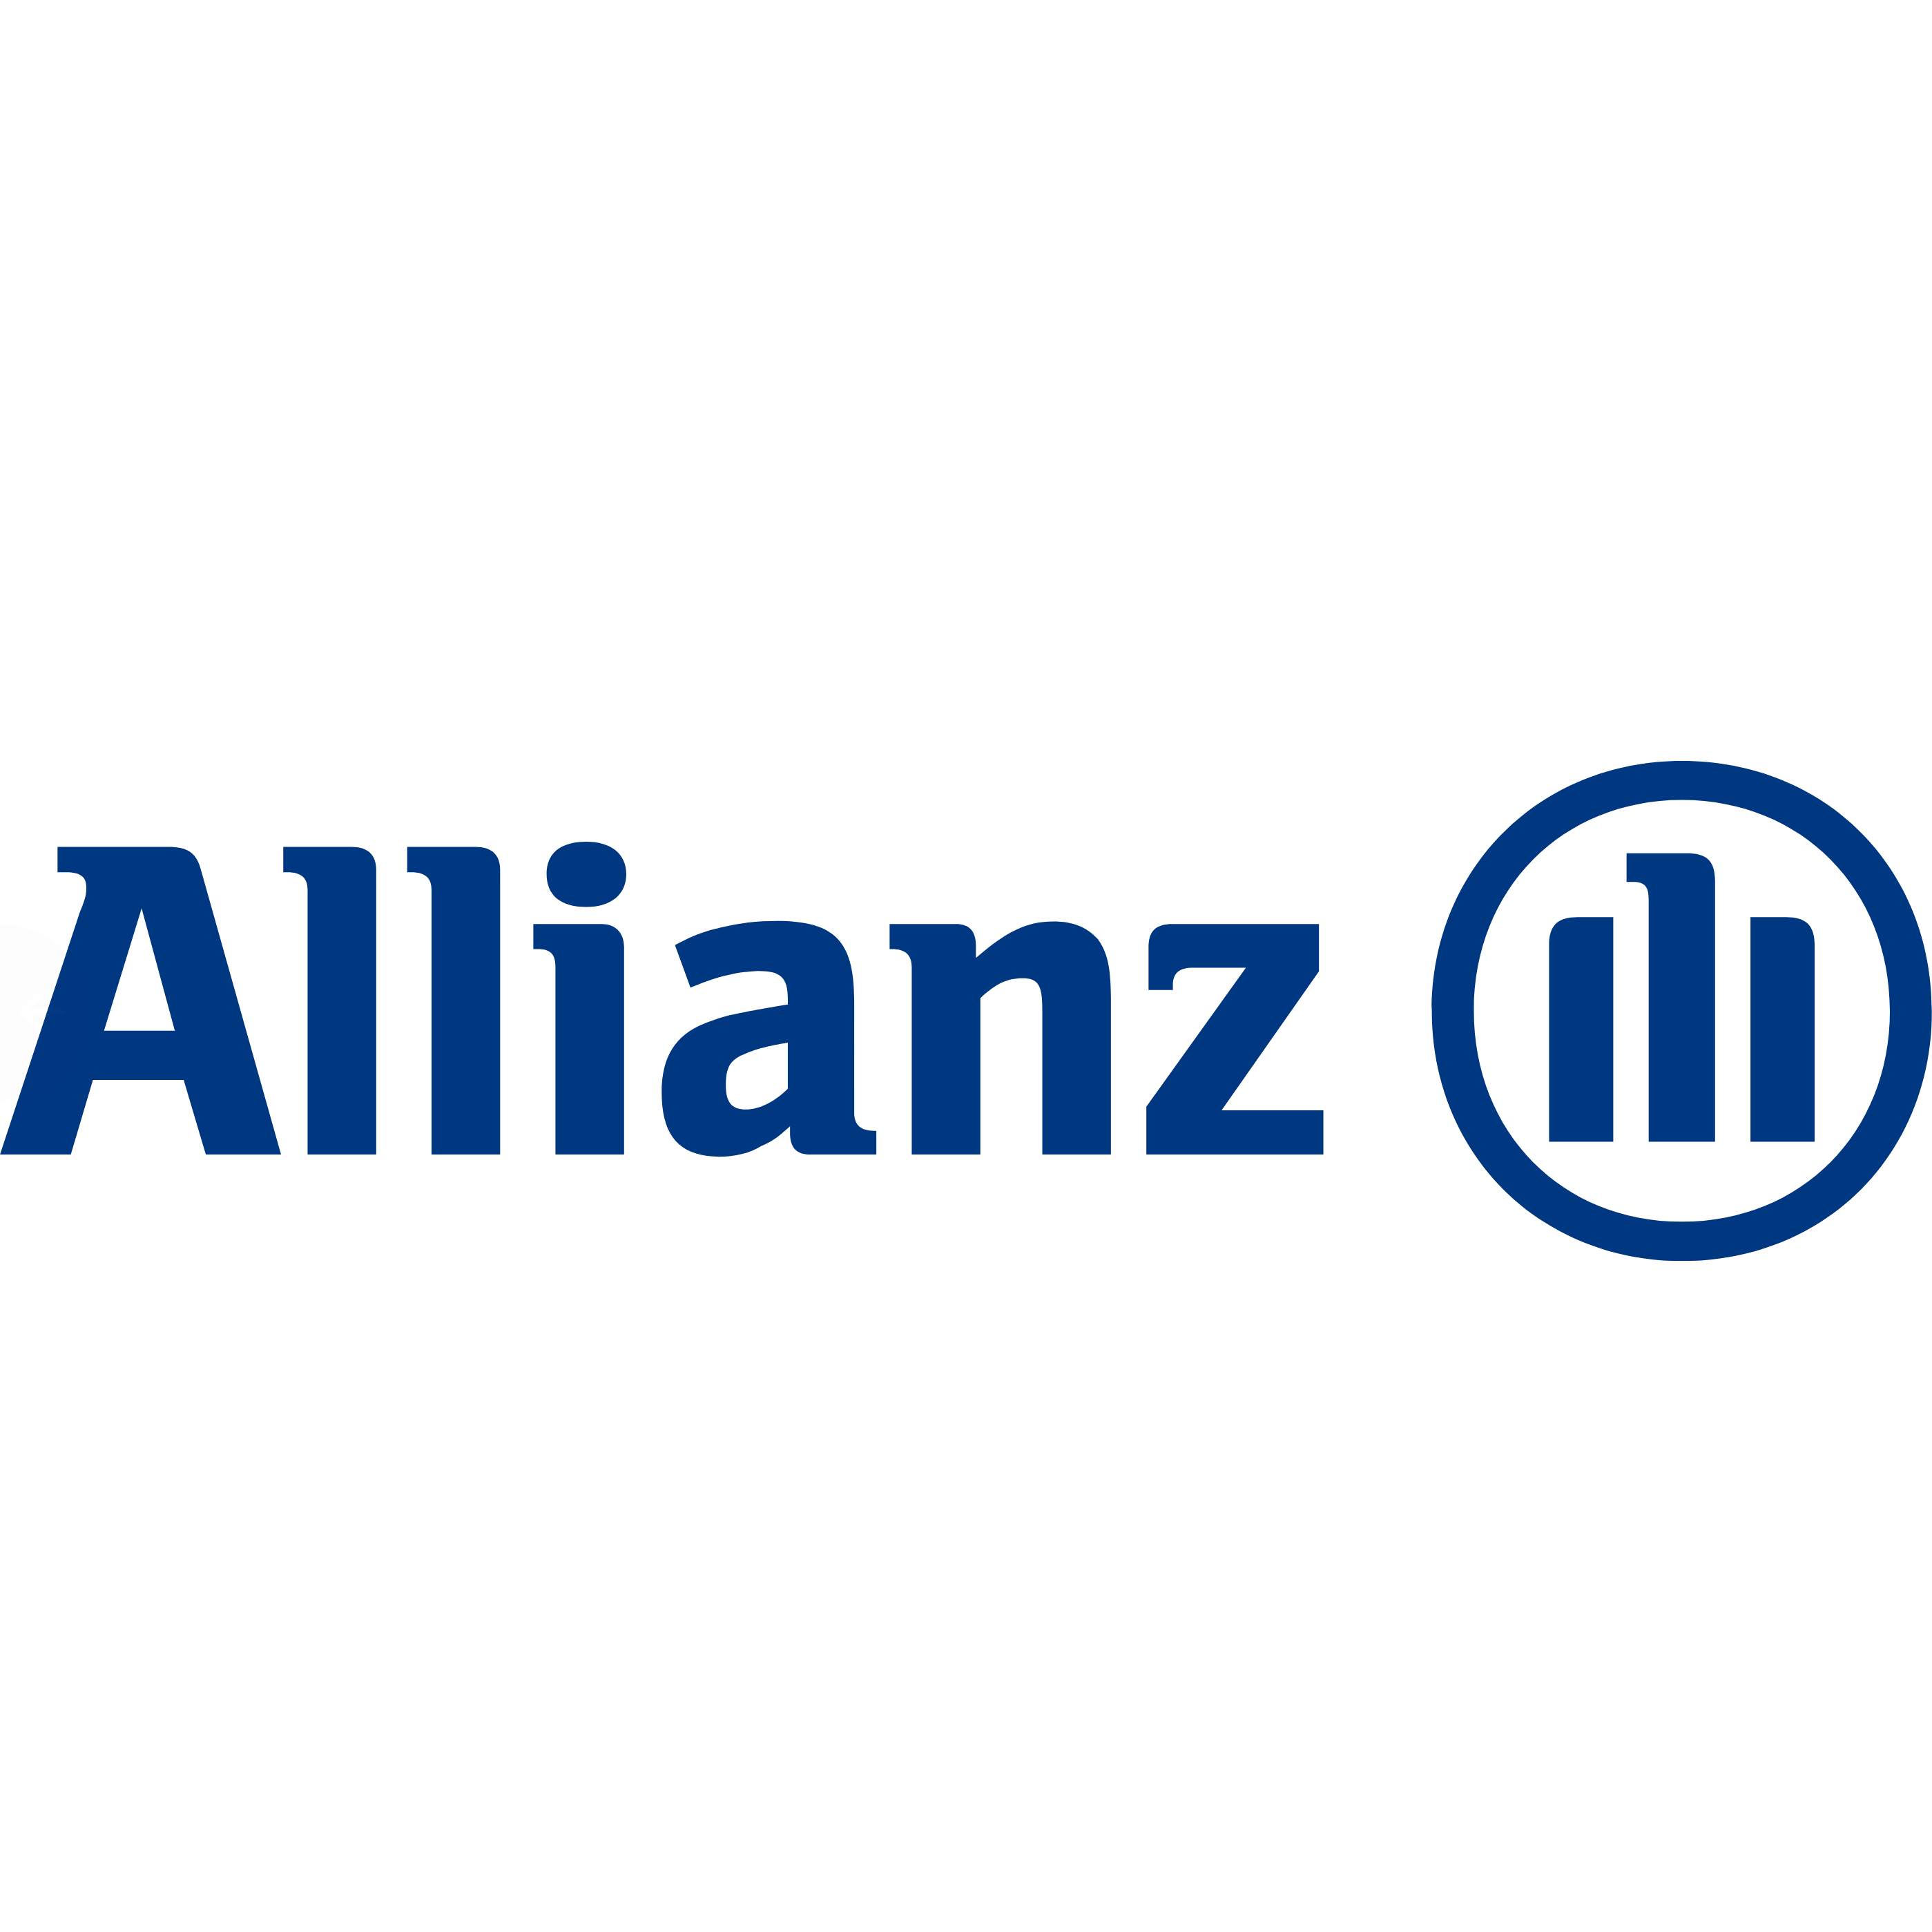 Annette Jarski Allianz Hauptvertretung in Halle (Saale) - Logo